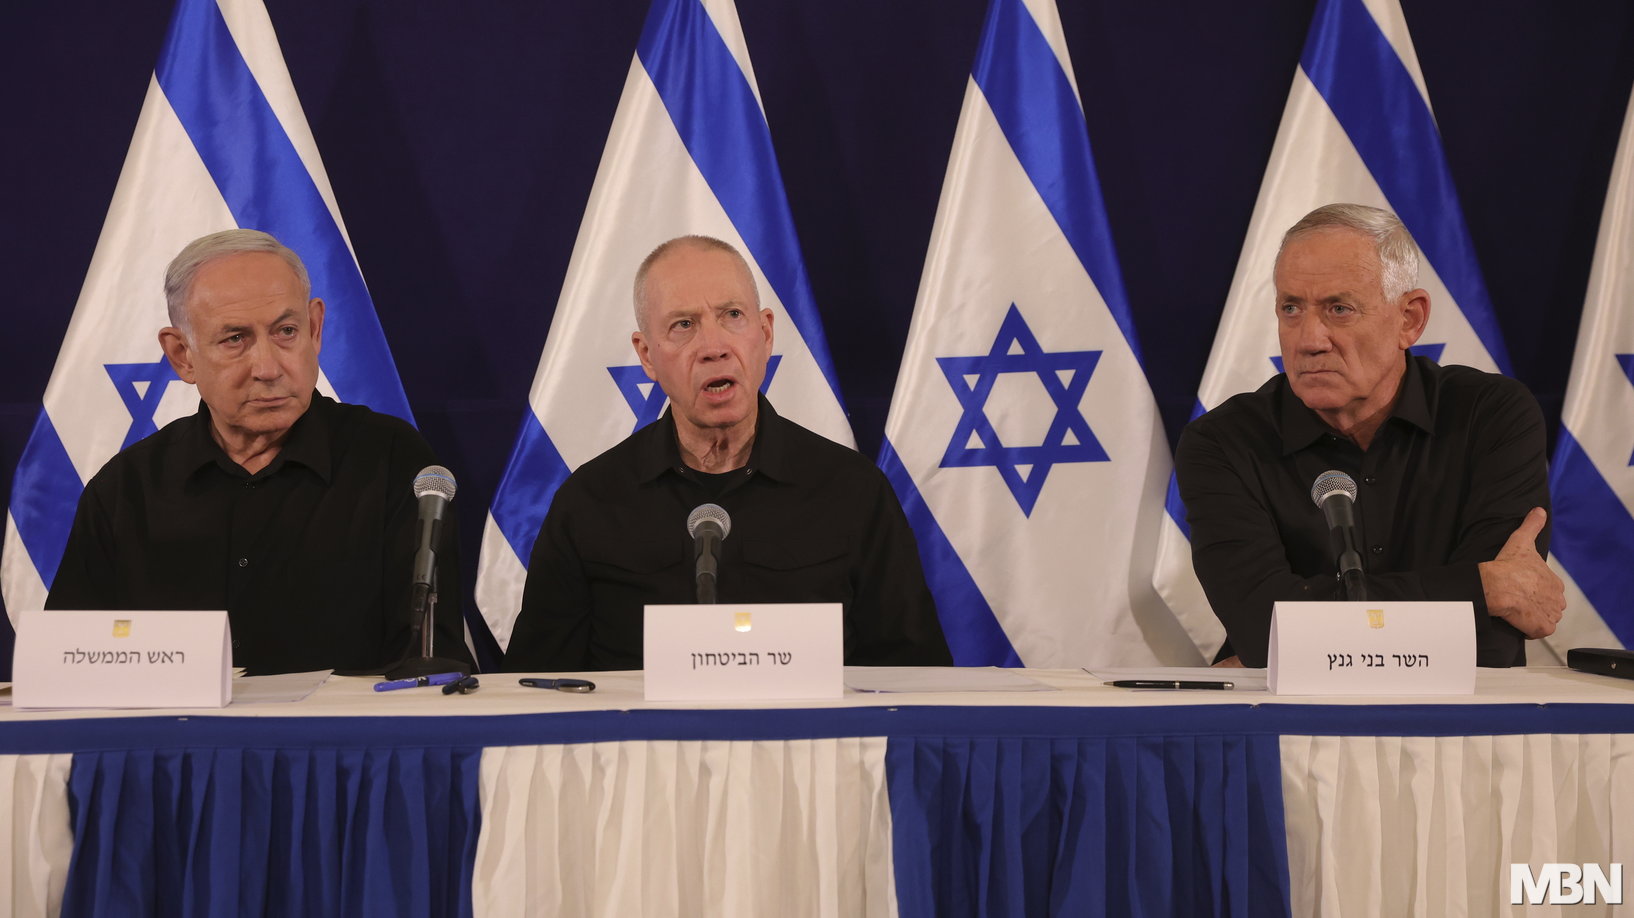 "المعسكر الرسمي" يمتنع عن المشاركة في جلسة الحكومة الإسرائيلية بسبب خلافات داخلية